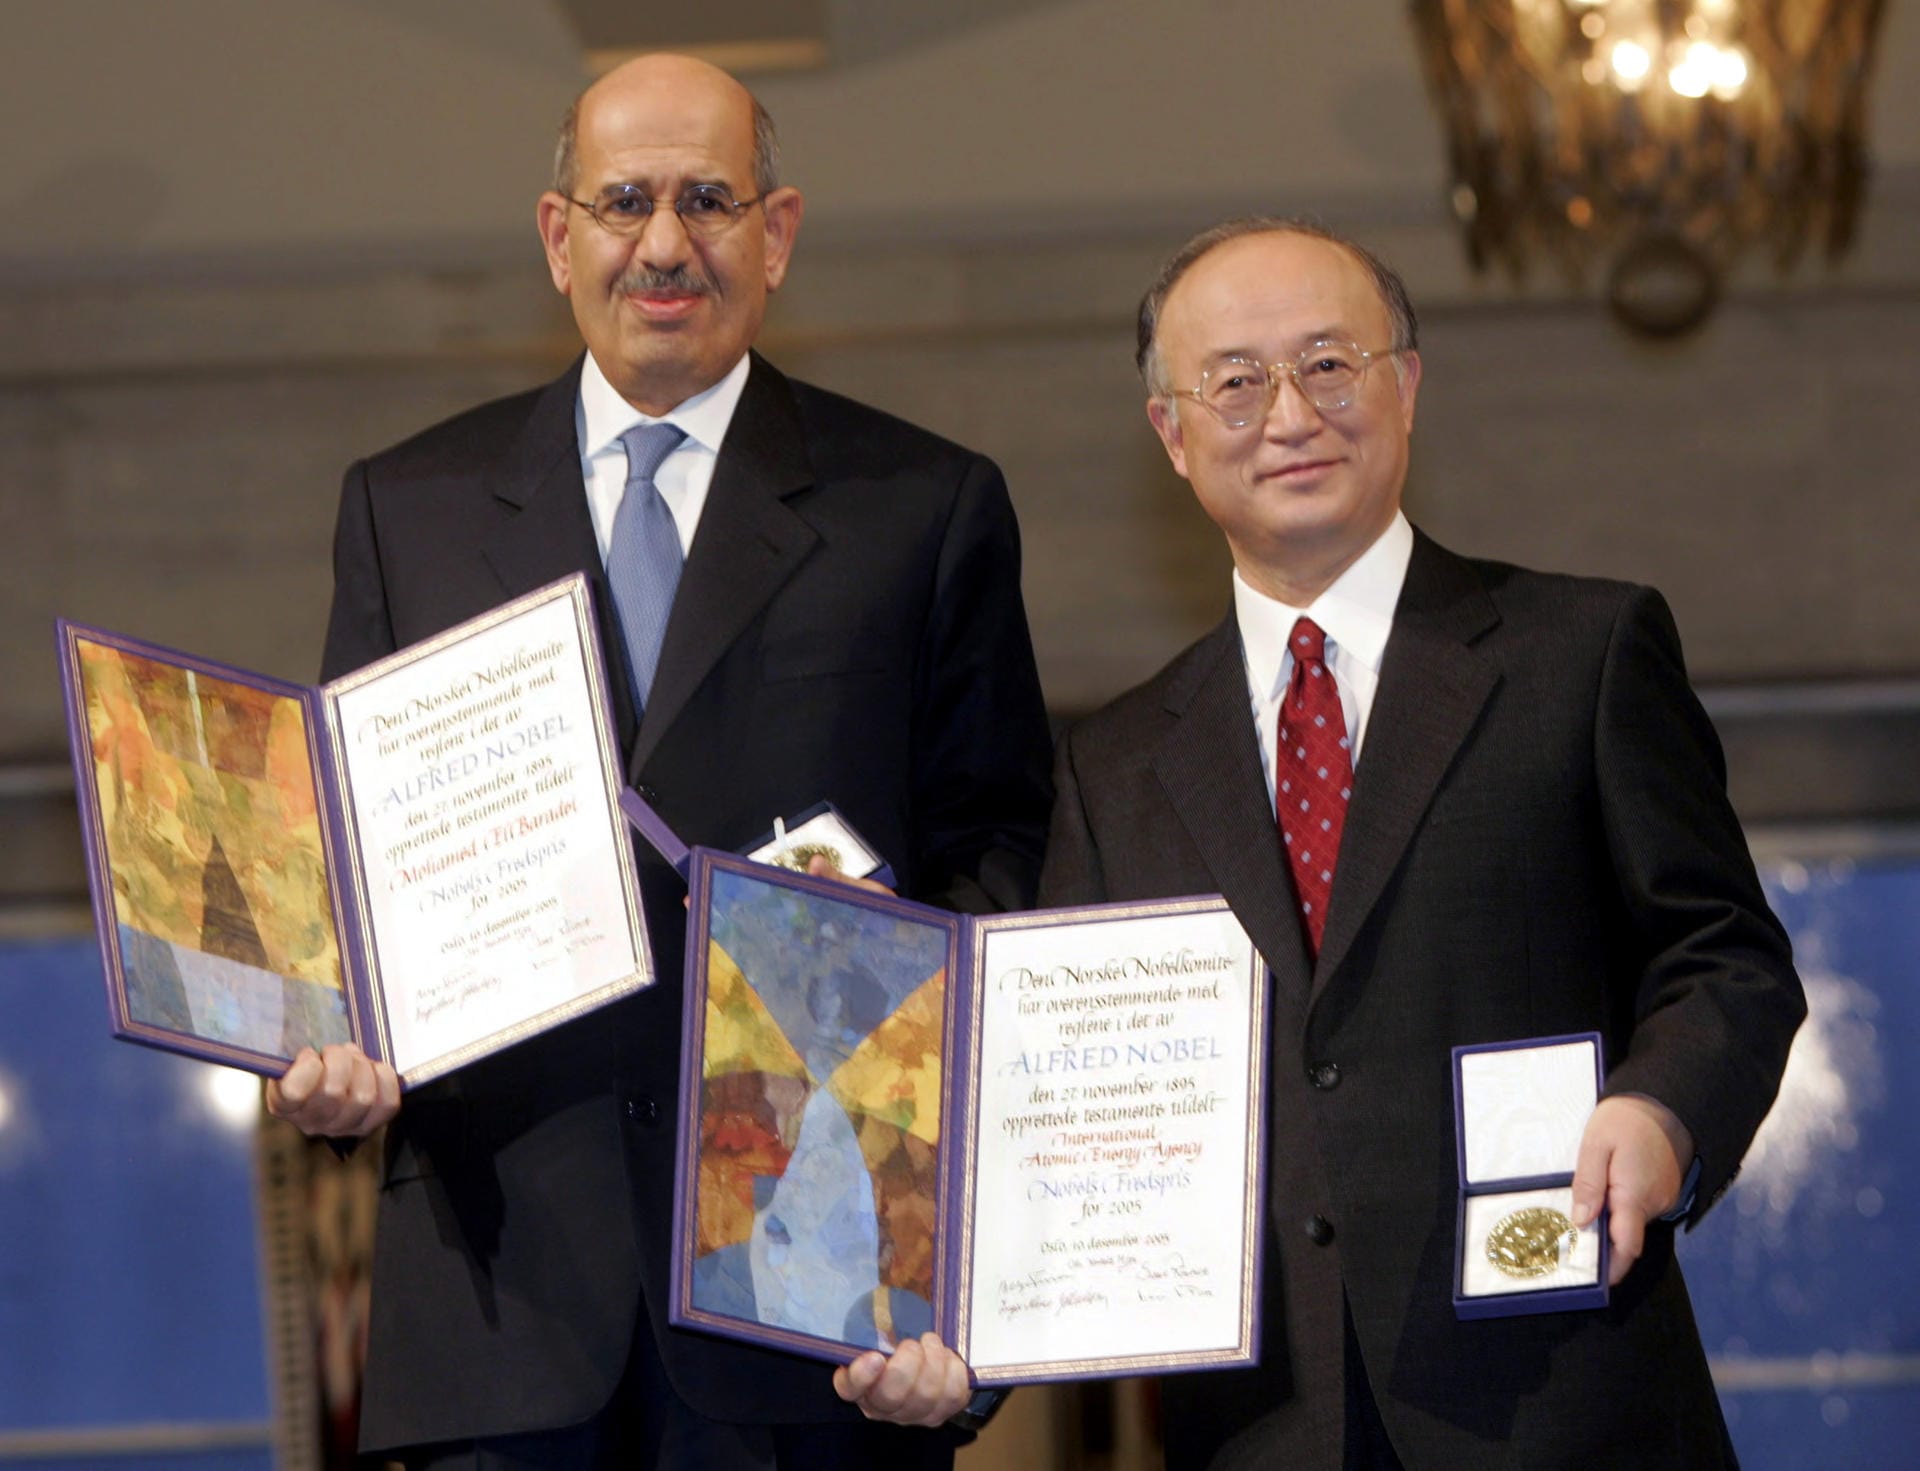 2005 teilten sich Mohamed El-Baradei (l), ein ägyptischer Diplomat, und die Internationale Atomenergie-Organisation (IAEO) – hier repräsentiert durch den Vorsitzenden des Gouverneursrates, Yukia Amano – den Friedensnobelpreis. Sie erhielten ihn für ihren Einsatz gegen den militärischen Missbrauch von Atomenergie sowie für die sichere Nutzung der Atomenergie für zivile Zwecke.